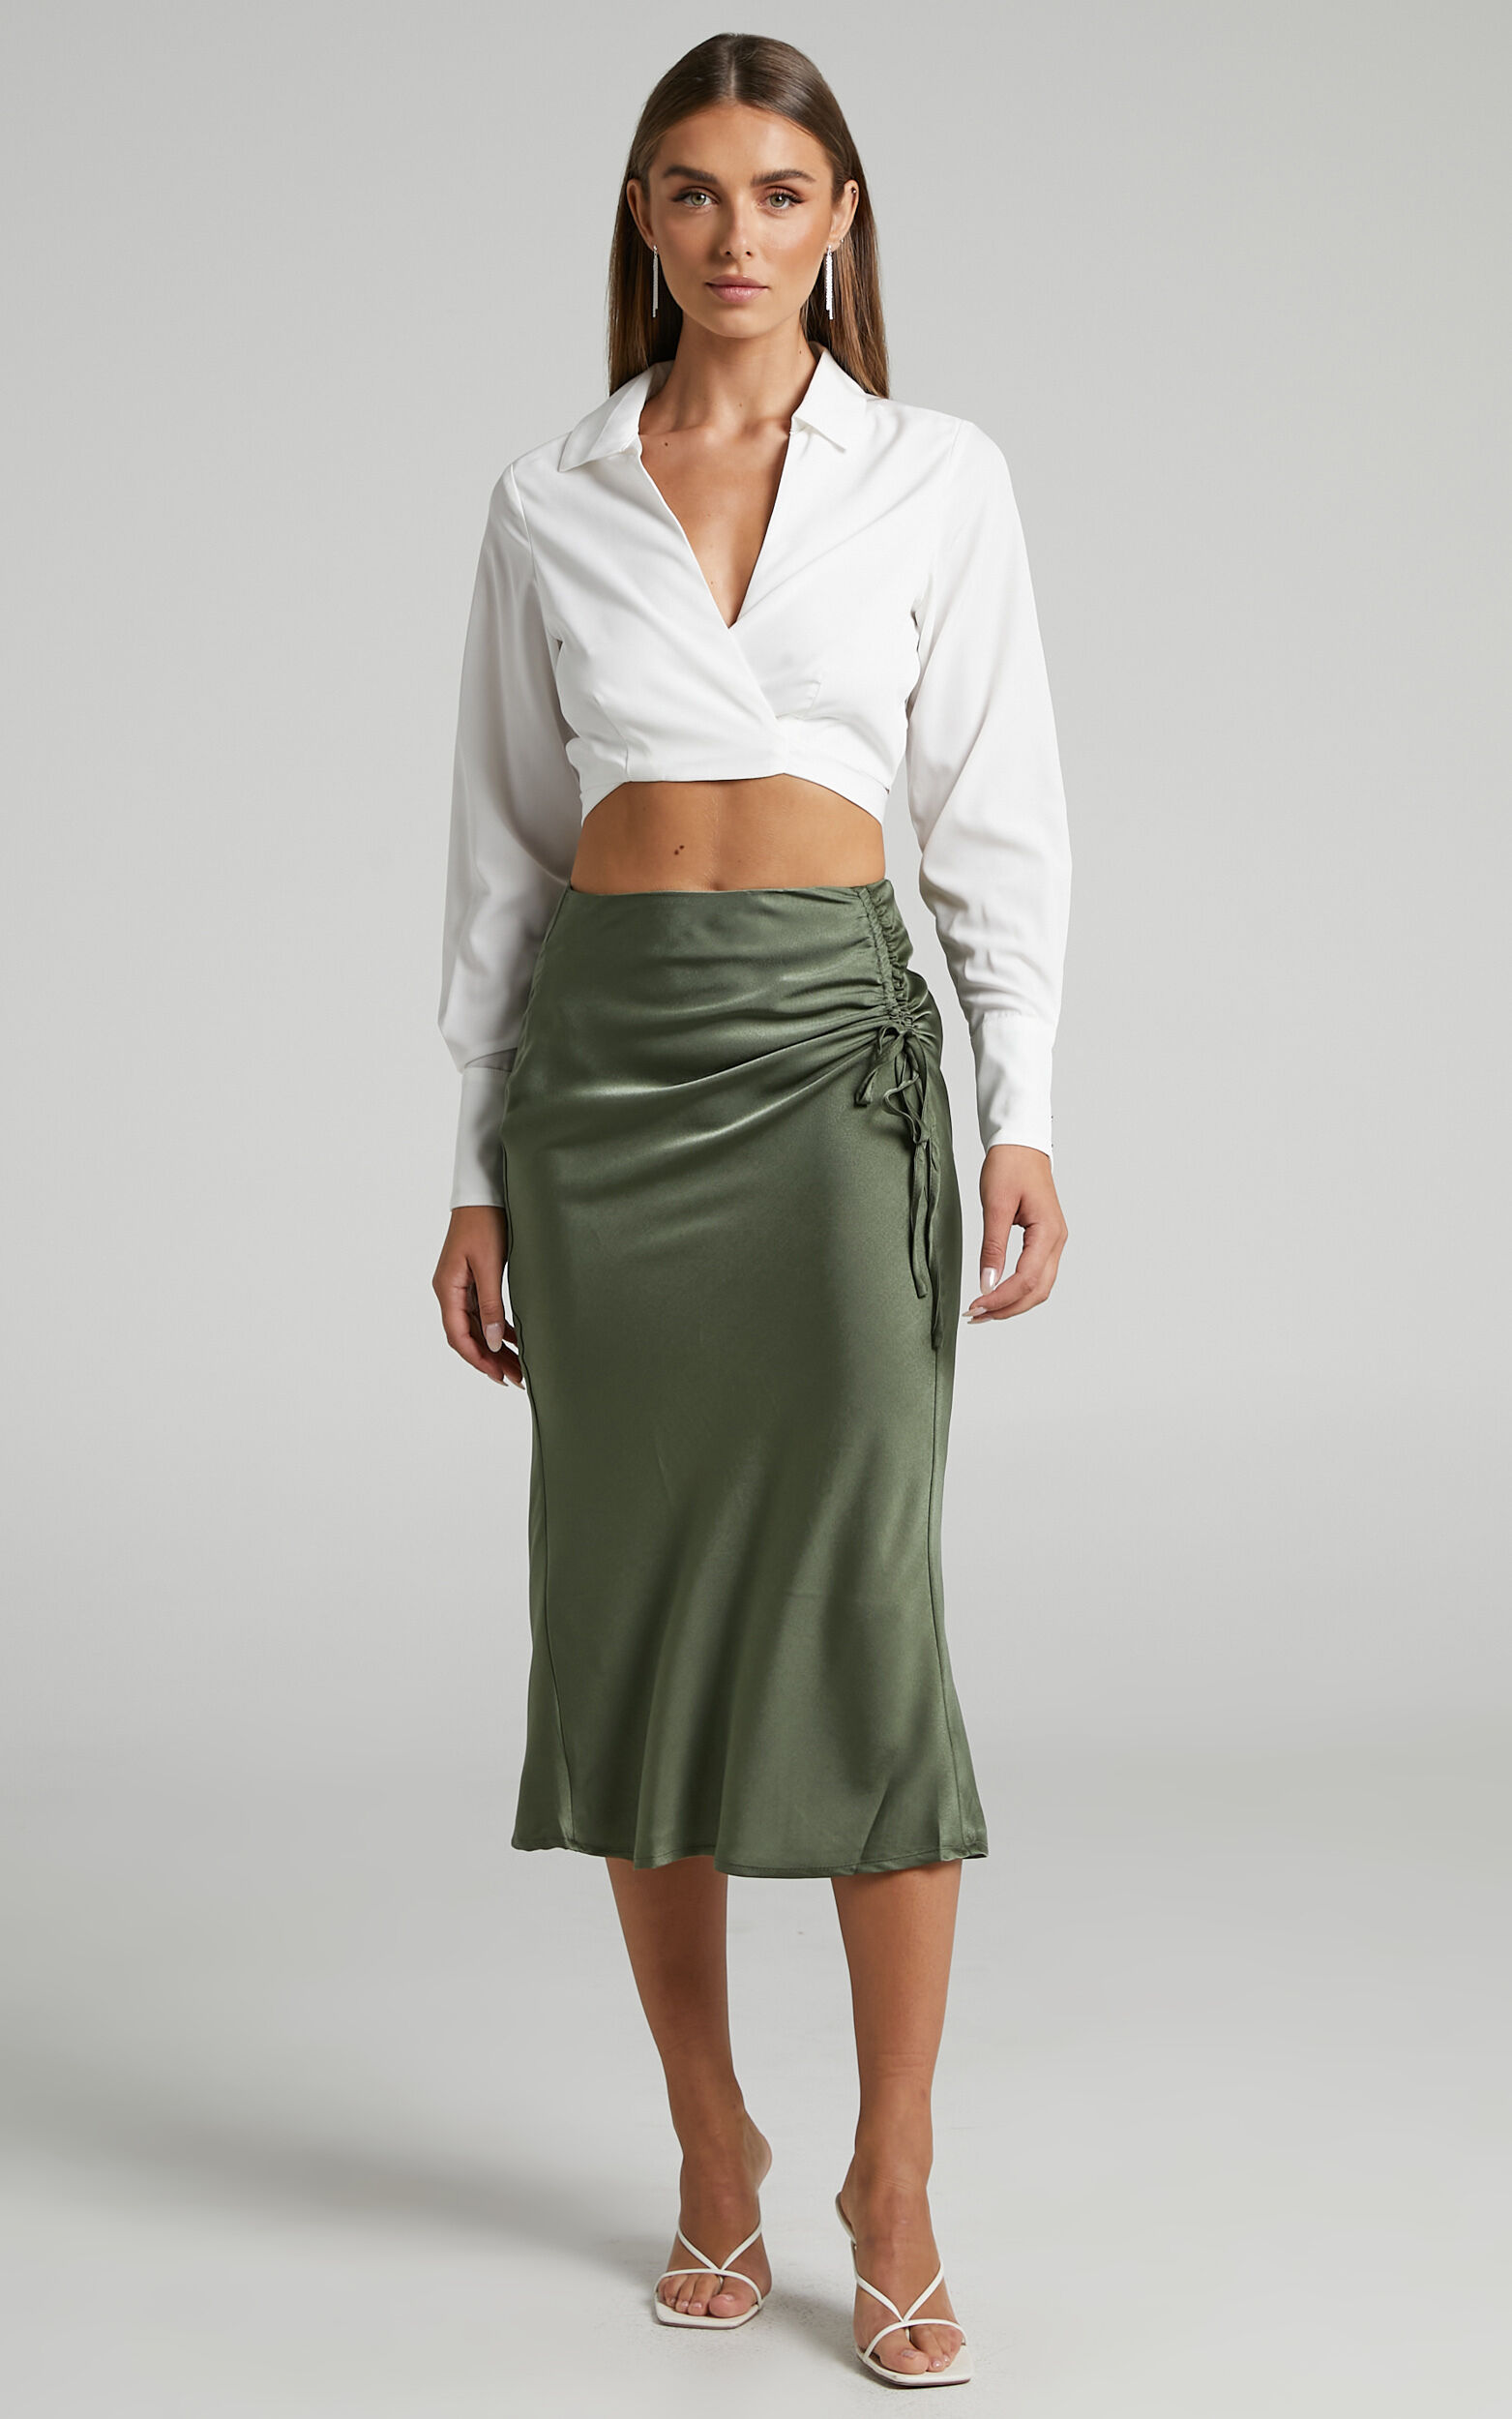 Zoë Kravitz Wears a Green Telfar Bag and Slip Skirt in NYC